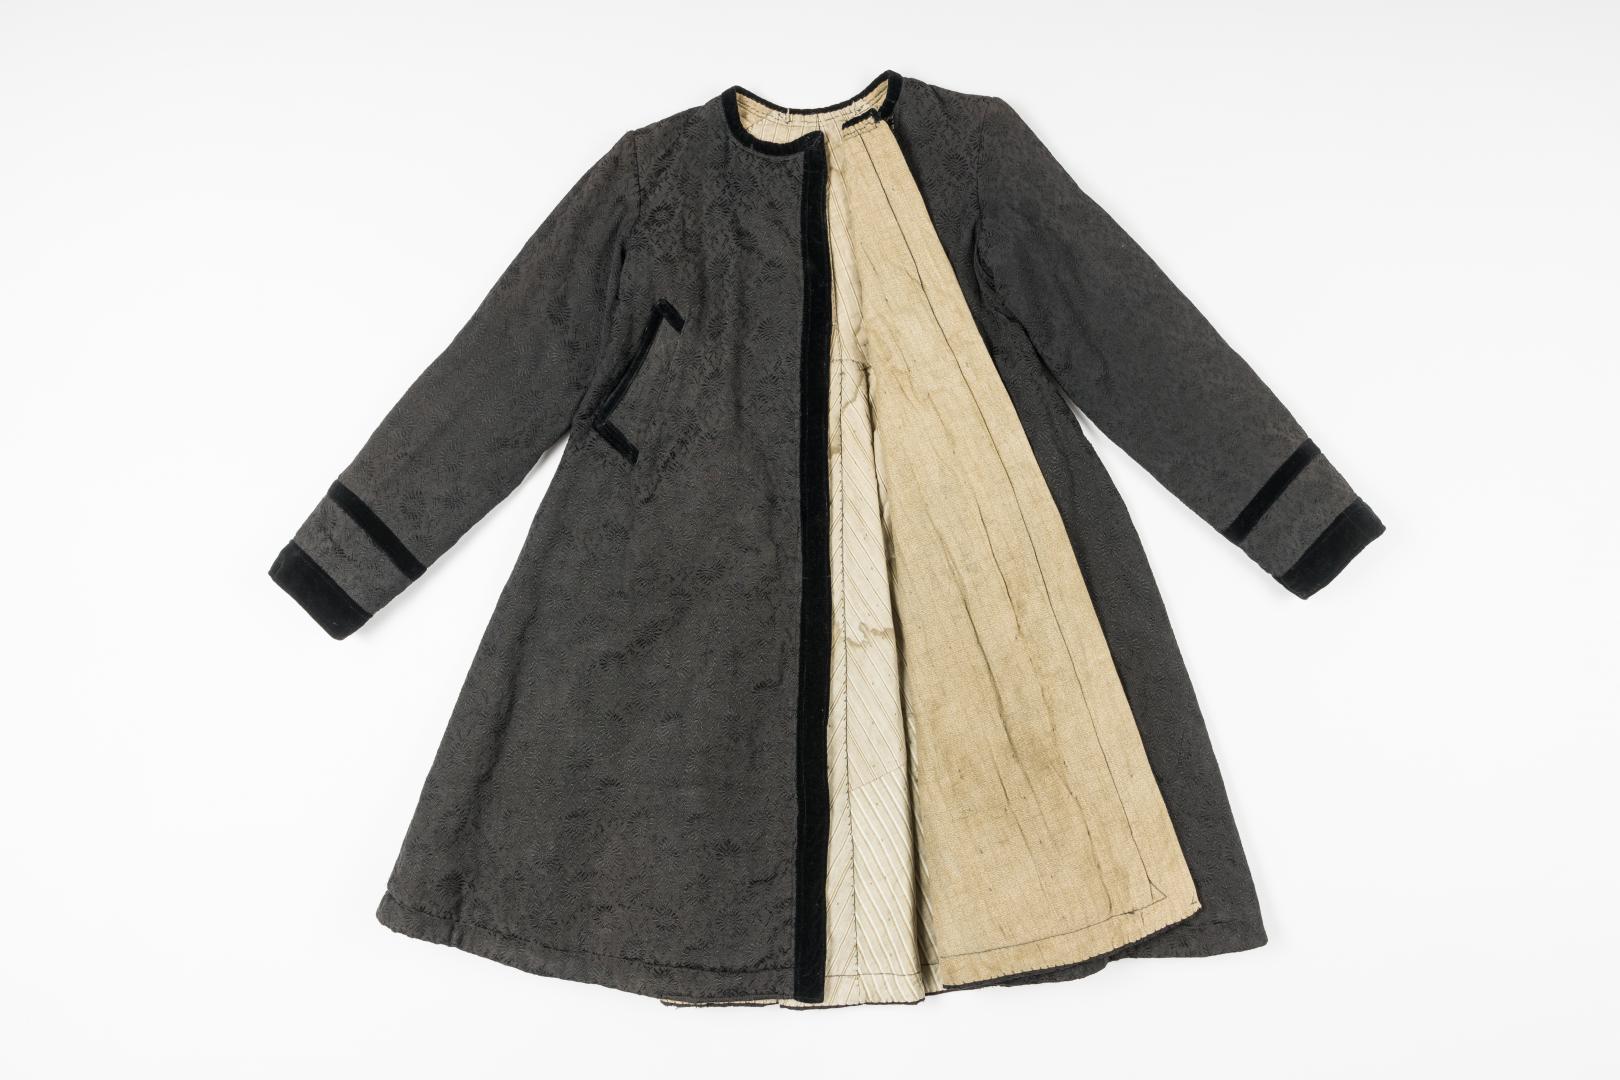 Yupka (jacquard women's overcoat)